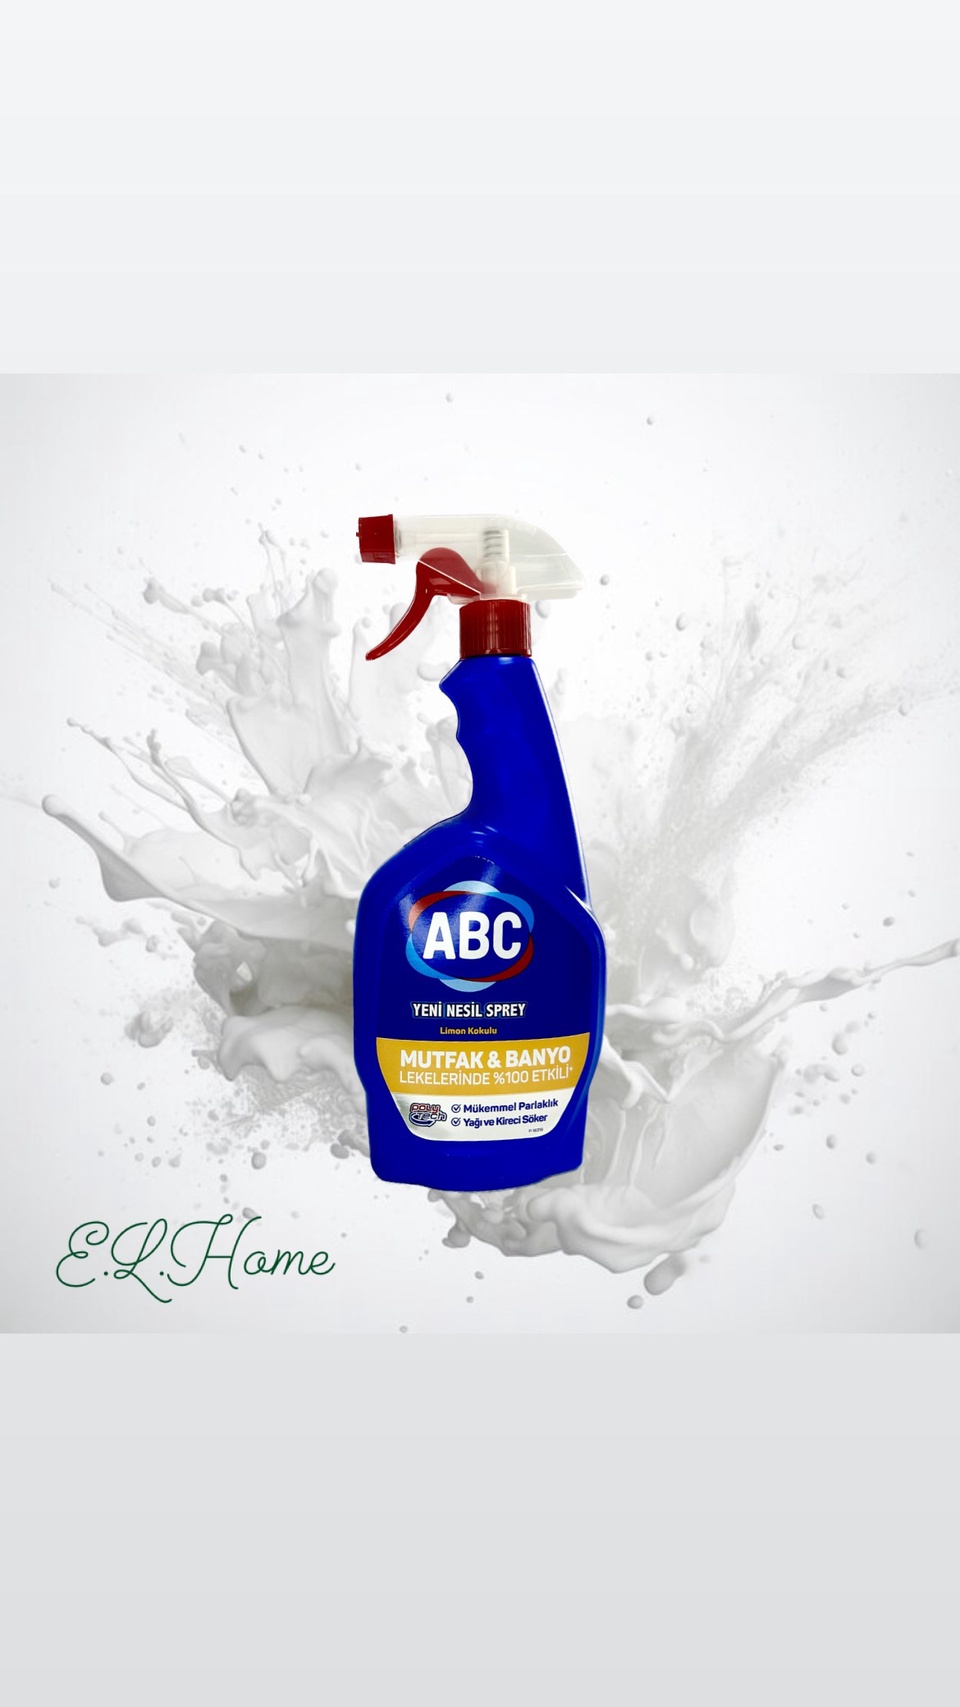 Спрей нового поколения ABC с ароматом лимона 750ml - 250 ₽, заказать онлайн.